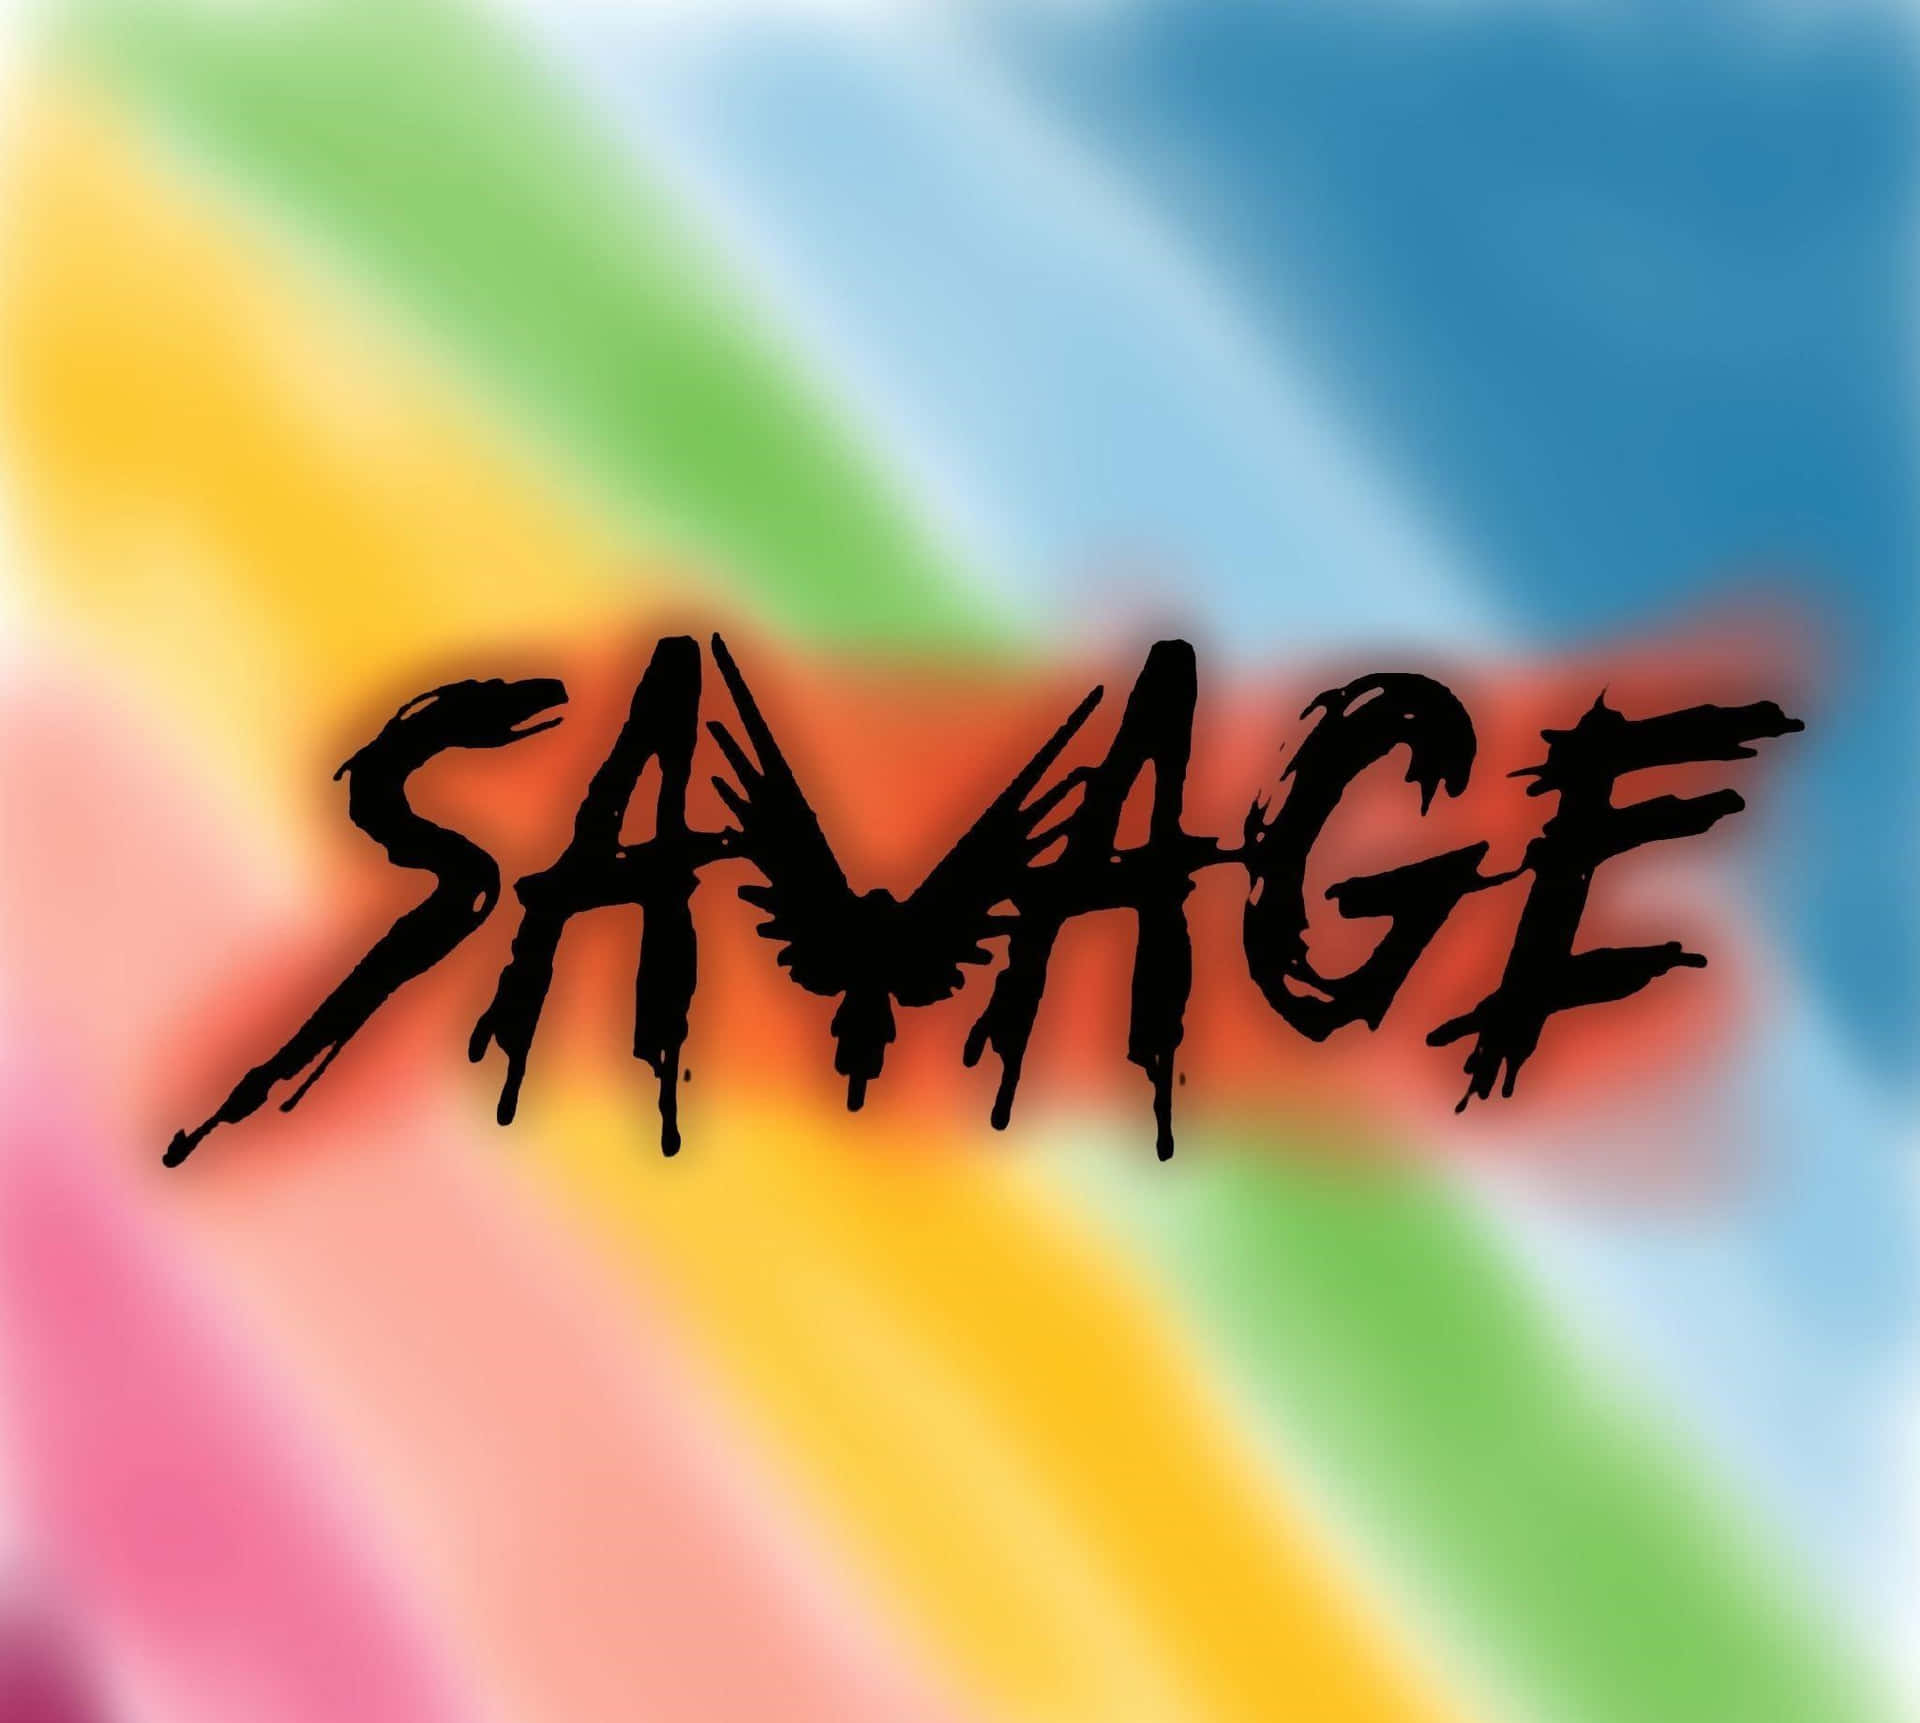 Savage2048 X 1838 Hintergrund